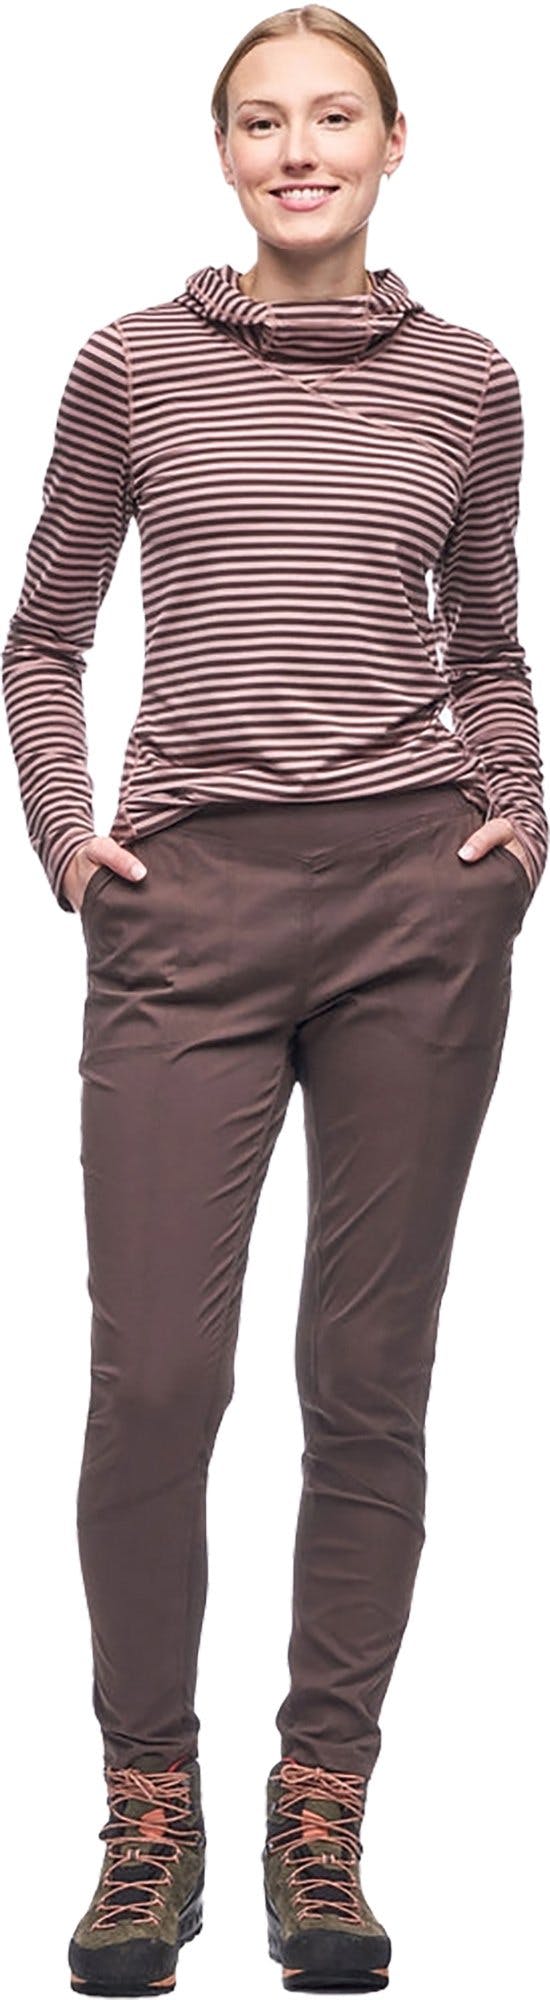 Image de produit pour T-shirt à capuchon et manches longues Tulum - Femme